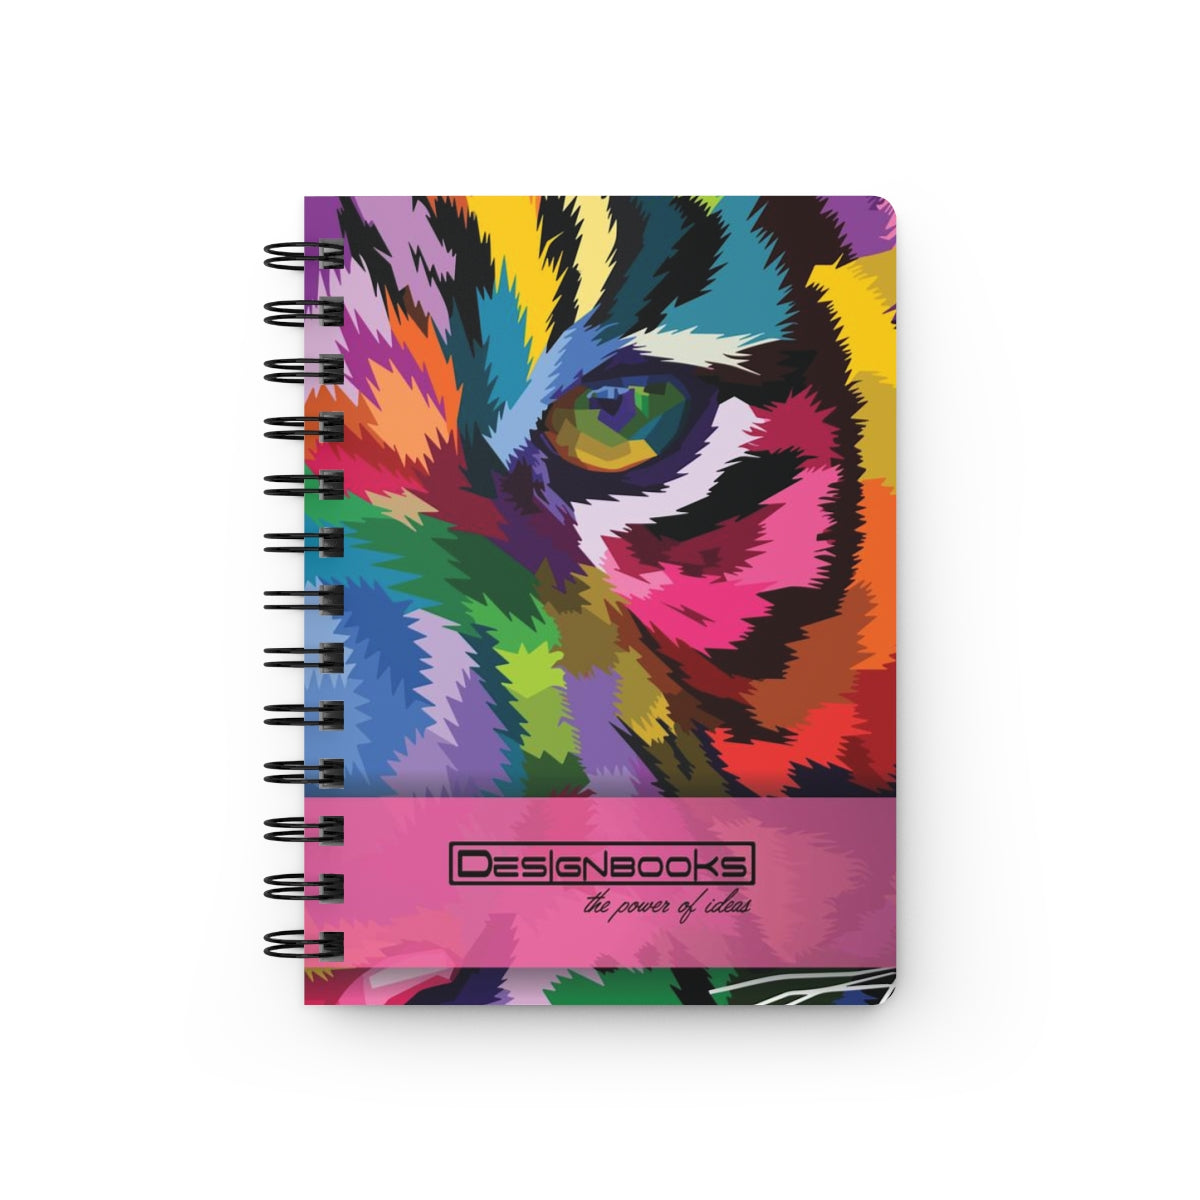 Tiger full colorSpiral Bound Journal